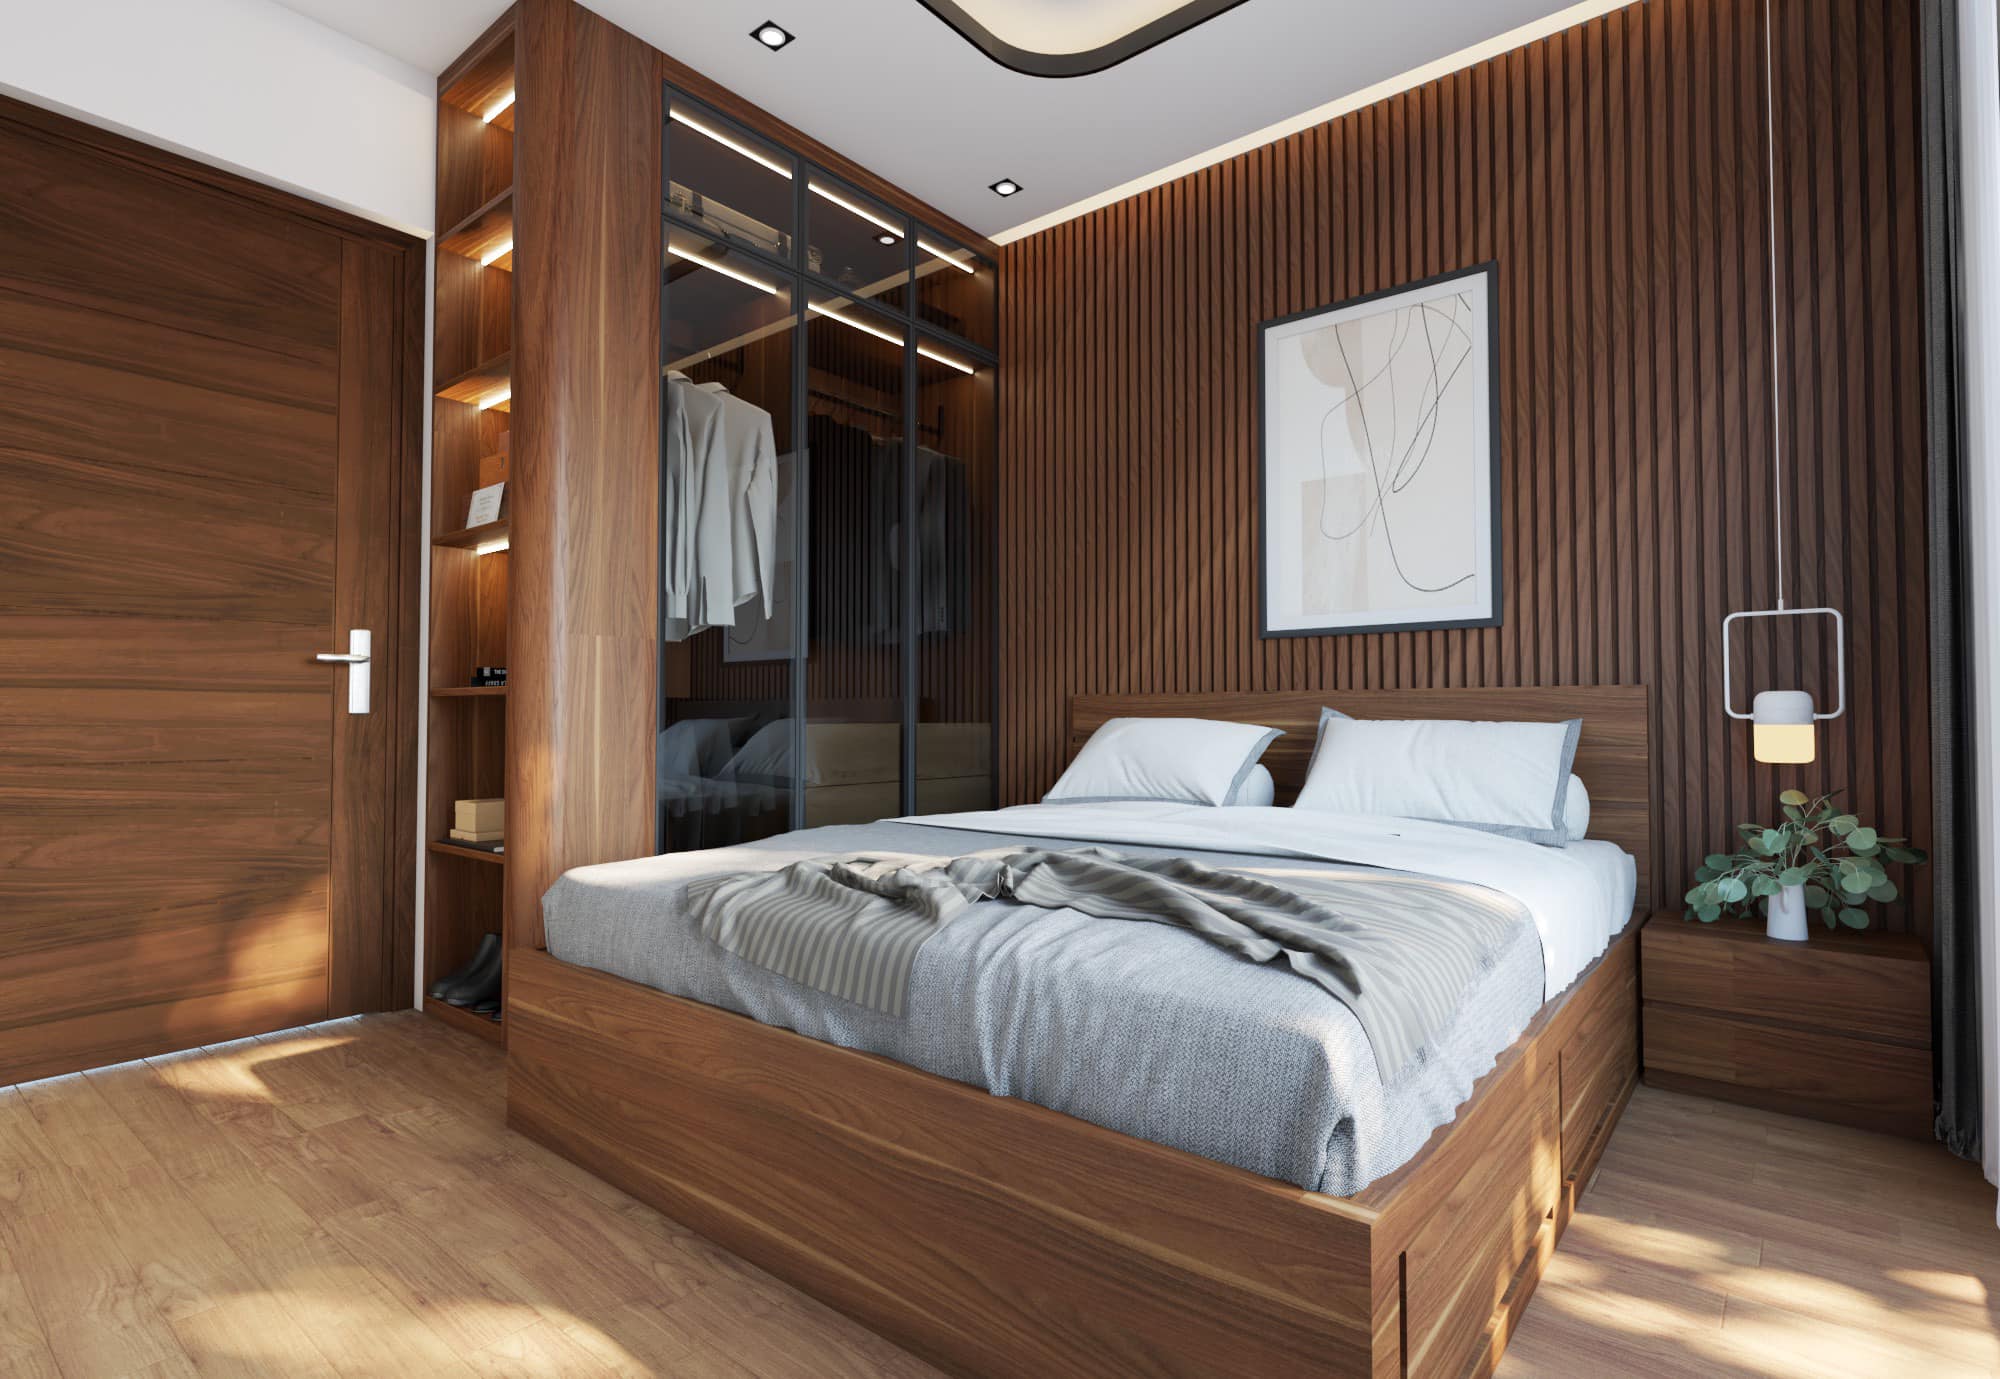 Mẫu thiết kế phòng ngủ tông màu gỗ tạo cảm giác gần gũi và trầm ấm